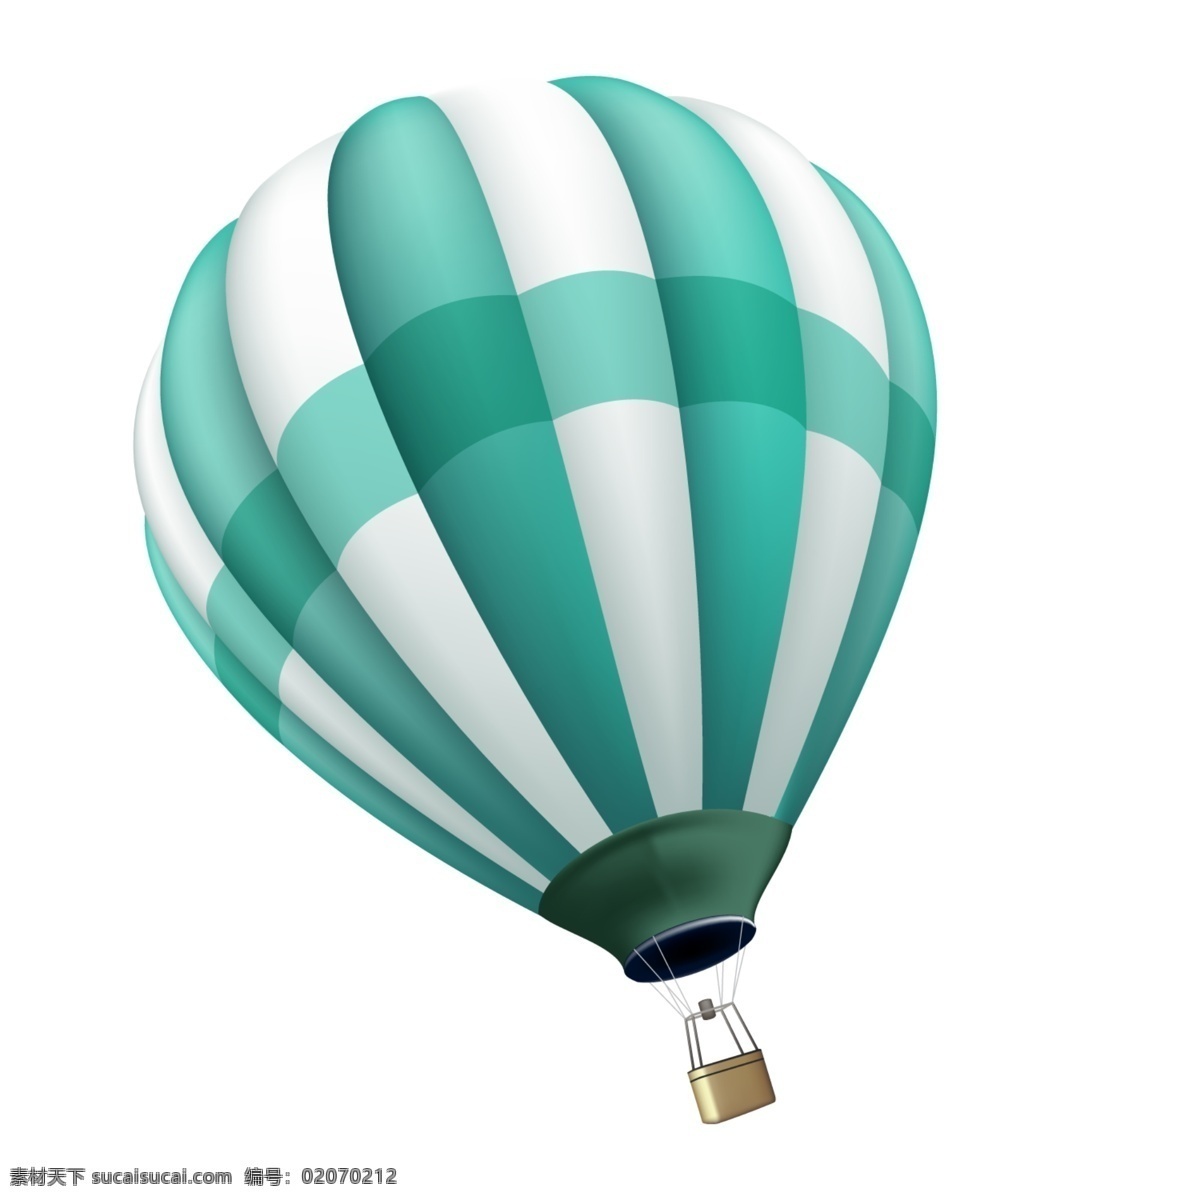 热气球 气球 球 装饰 点缀 装点 配饰 漂浮元素 促销 打折 活动 彩带 色块 散布 散落 素材图